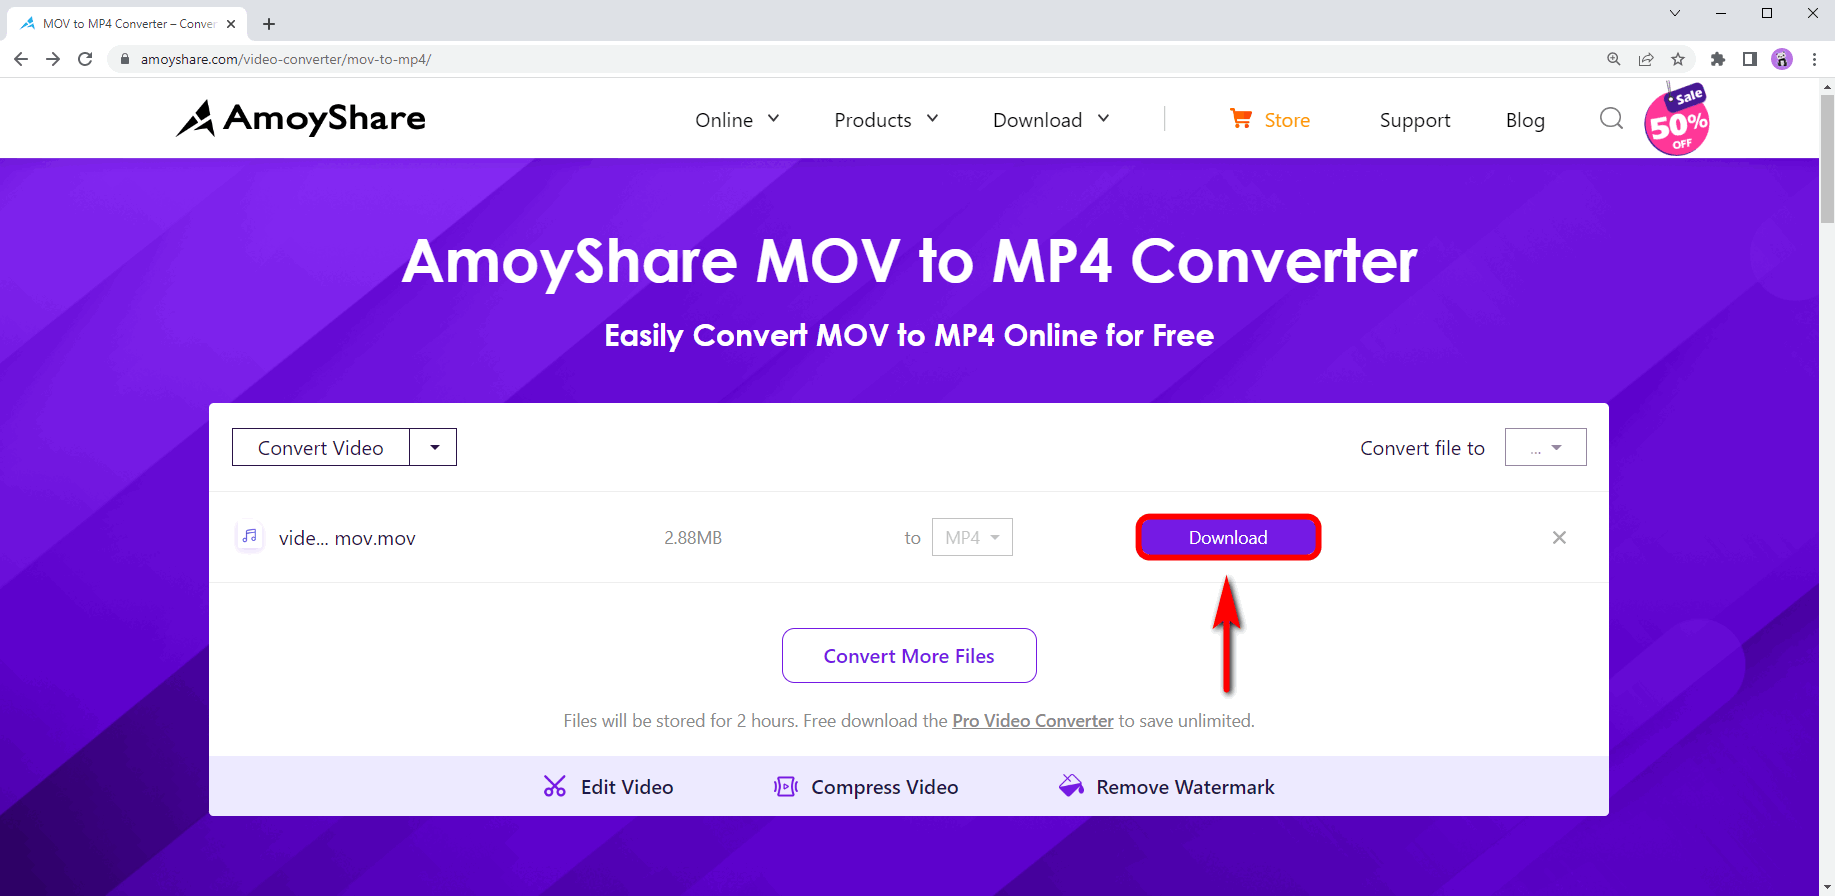 Laden Sie die konvertierte MOV-Datei herunter